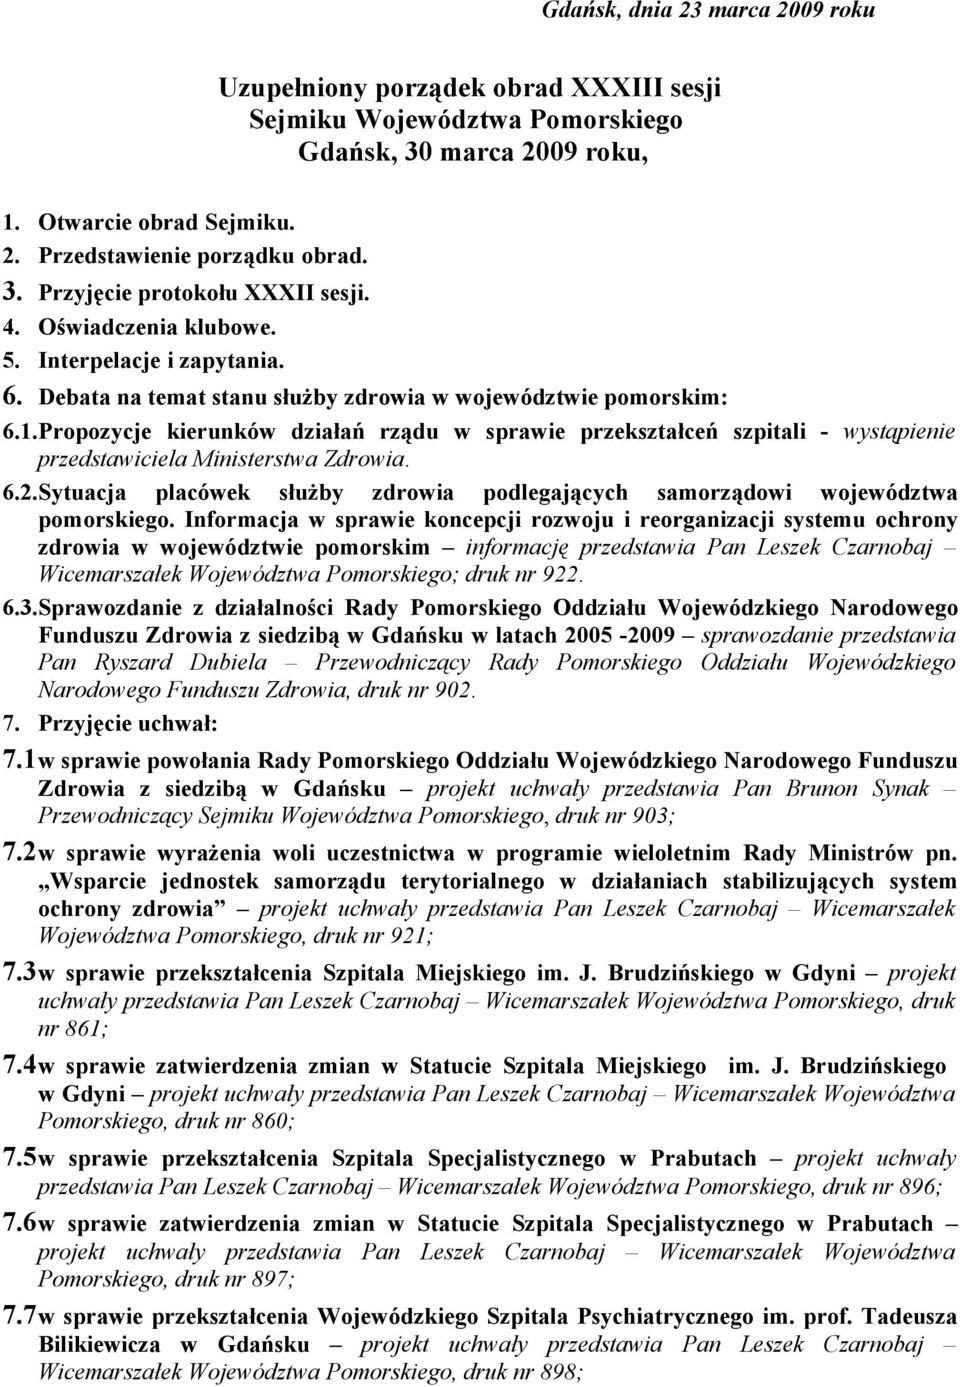 Propozycje kierunków działań rządu w sprawie przekształceń szpitali - wystąpienie przedstawiciela Ministerstwa Zdrowia. 6.2.